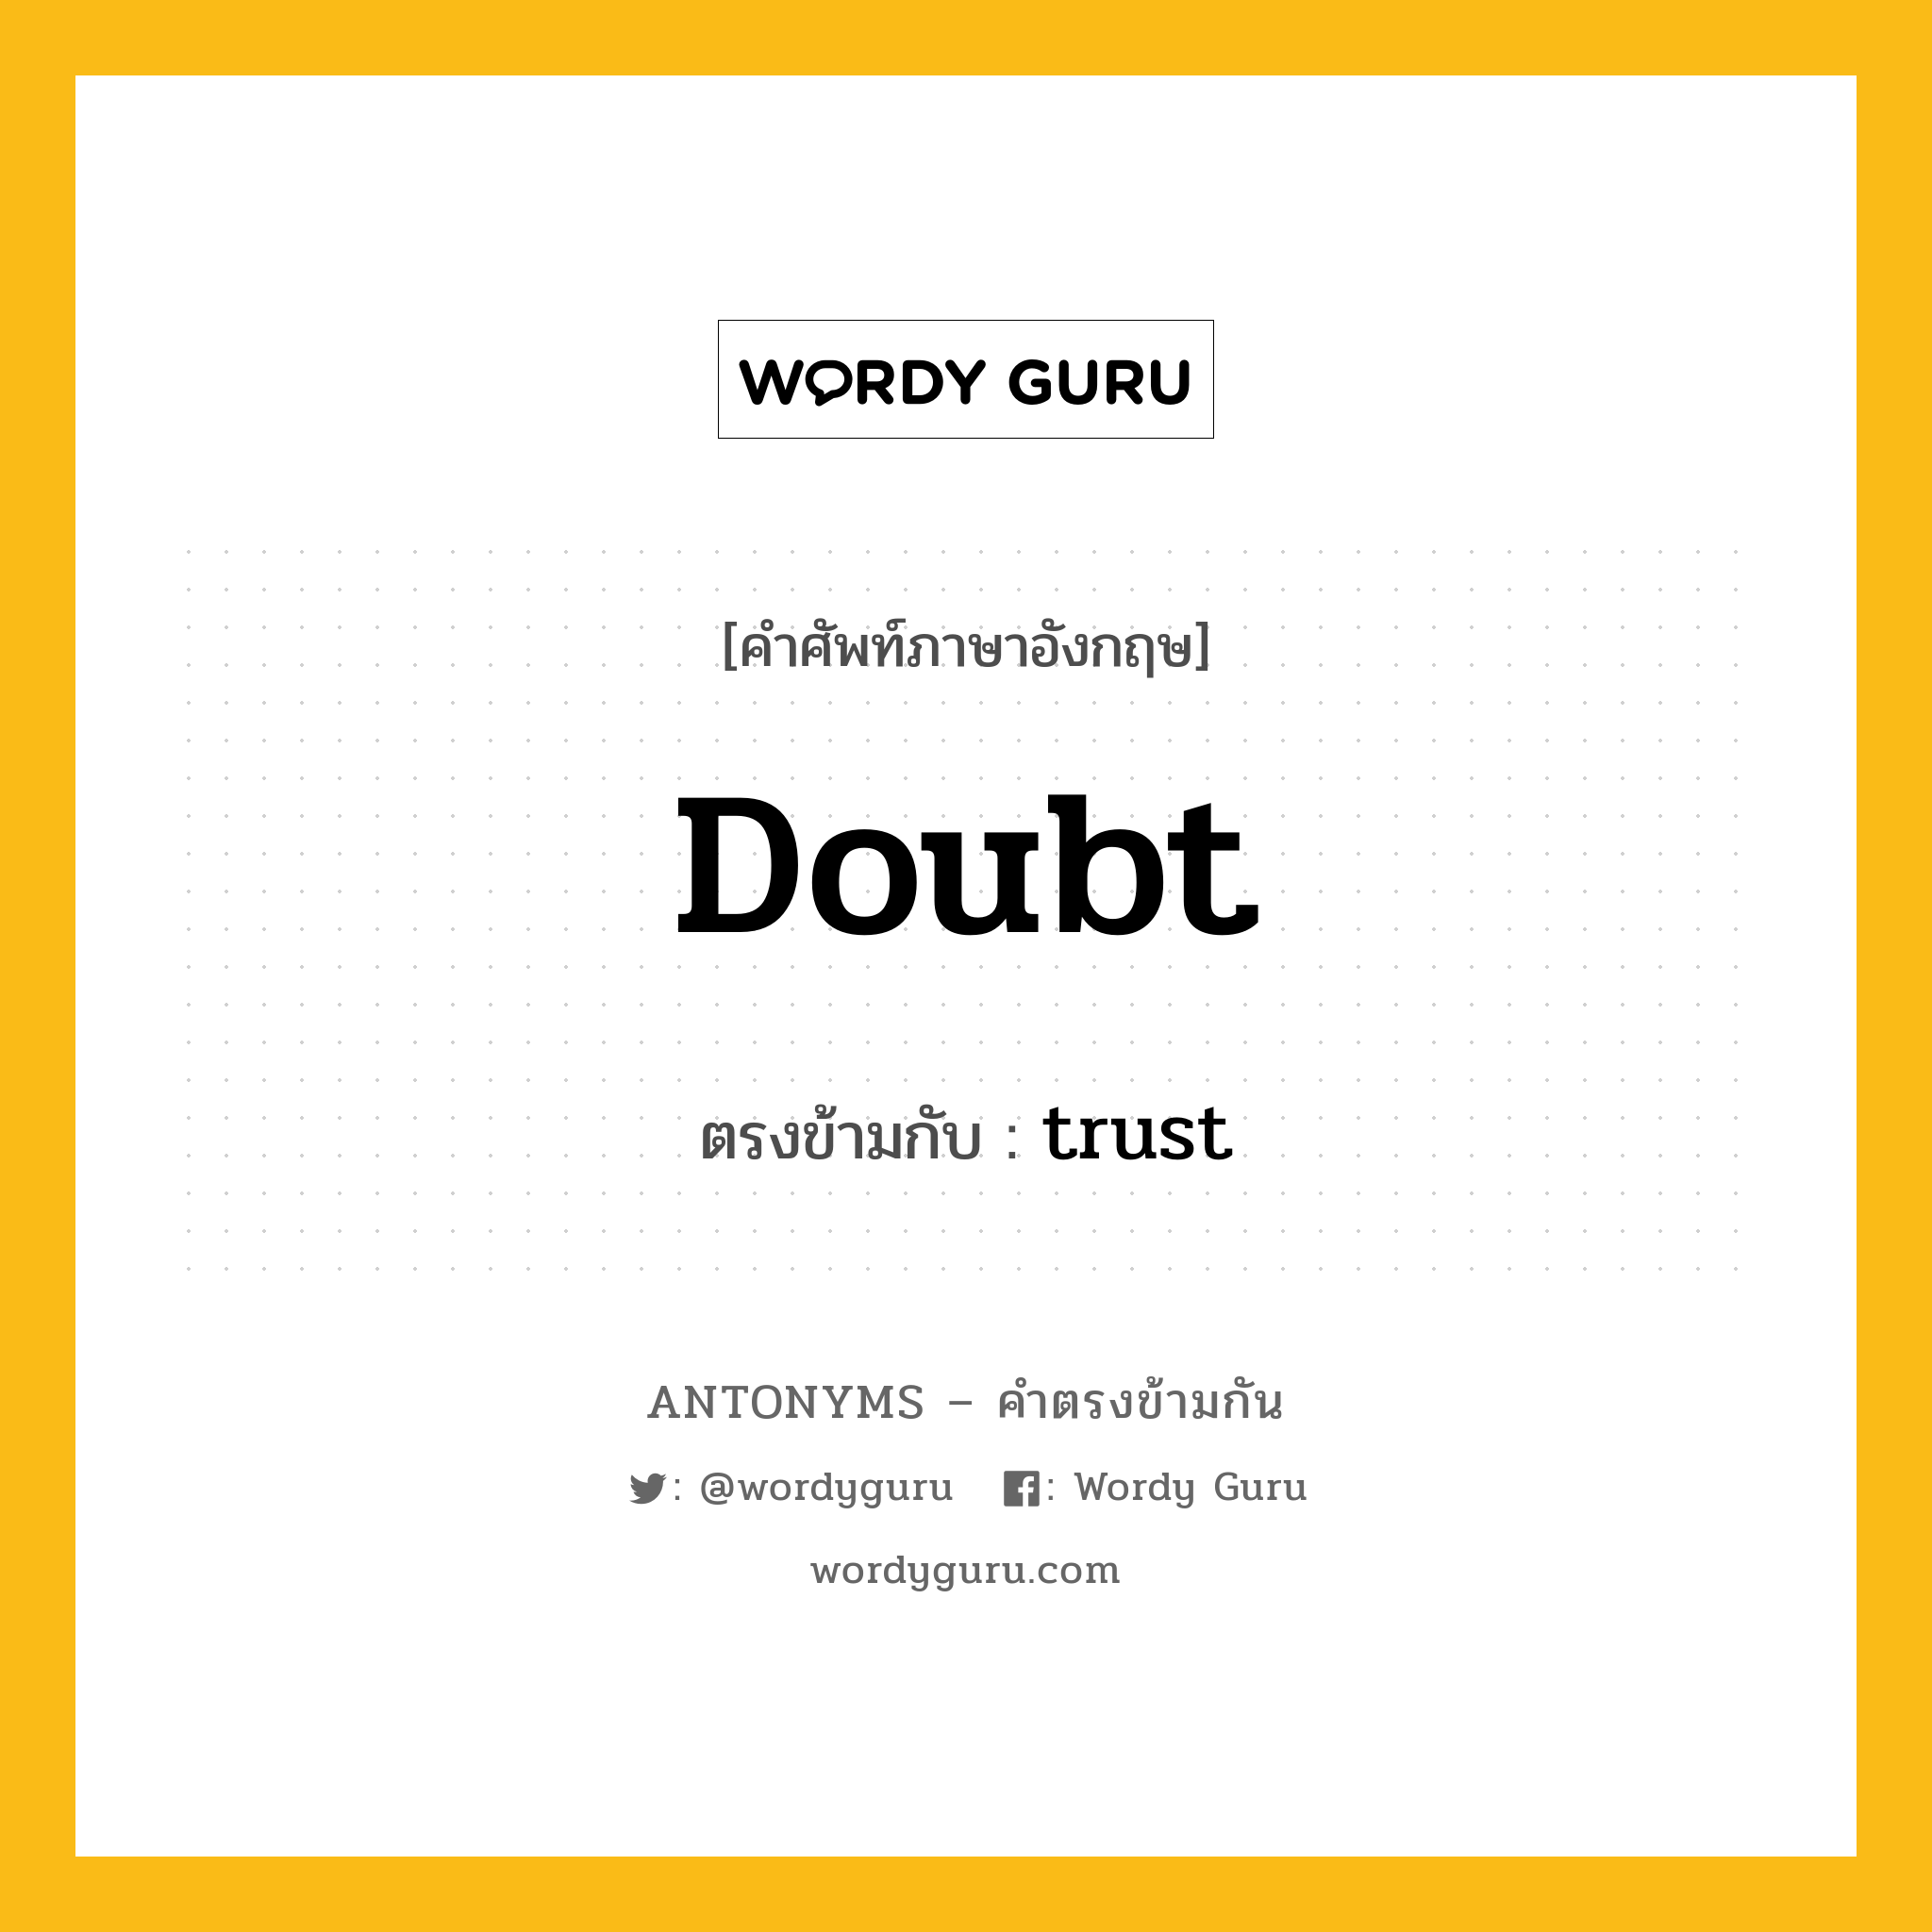 doubt เป็นคำตรงข้ามกับคำไหนบ้าง?, คำศัพท์ภาษาอังกฤษ doubt ตรงข้ามกับ trust หมวด trust